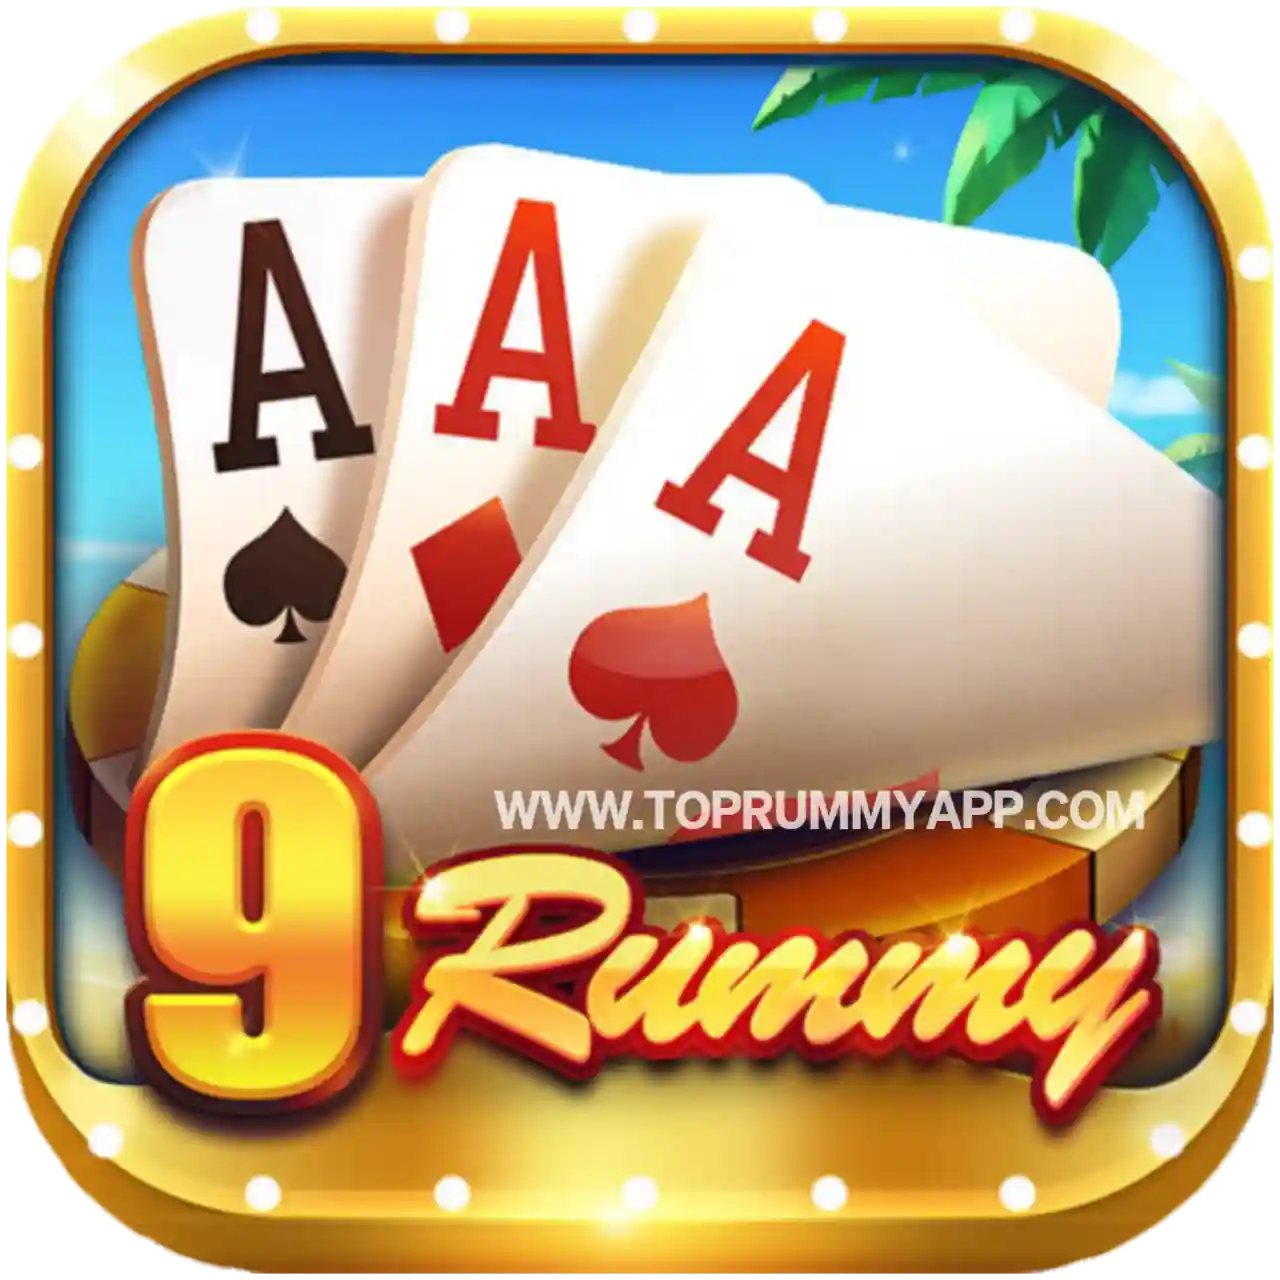 9 Rummy Apk Download - Best Rummy Apps List 41 Bonus